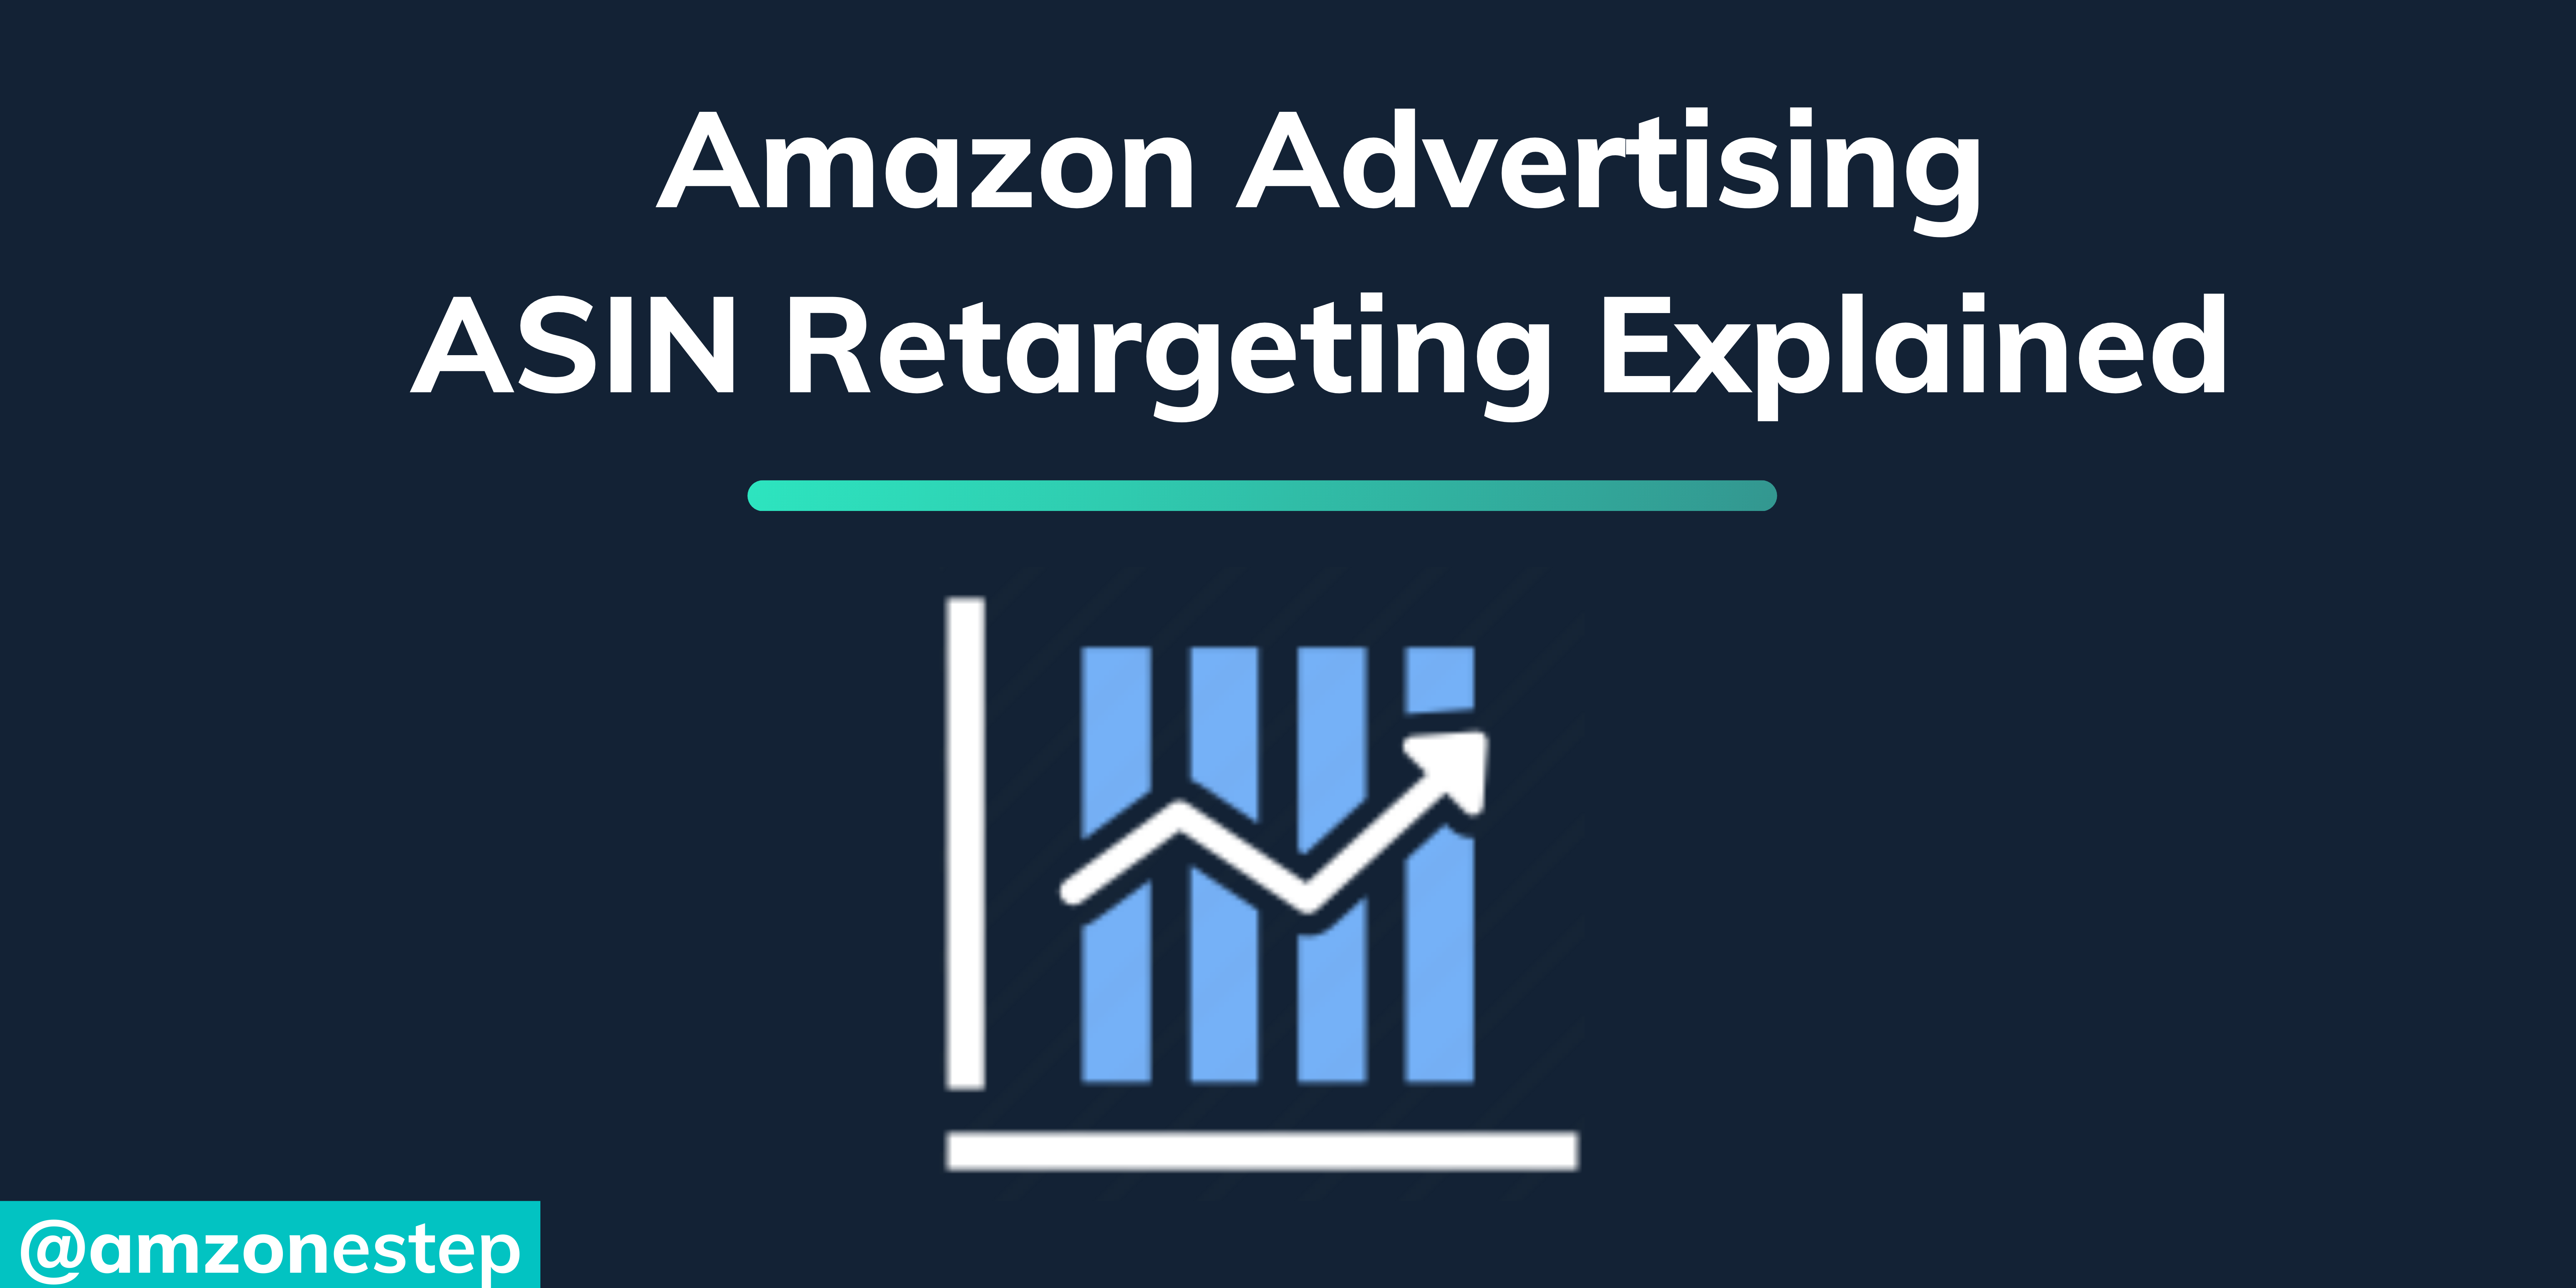 Amazon Advertising: ASIN Retargeting Explained